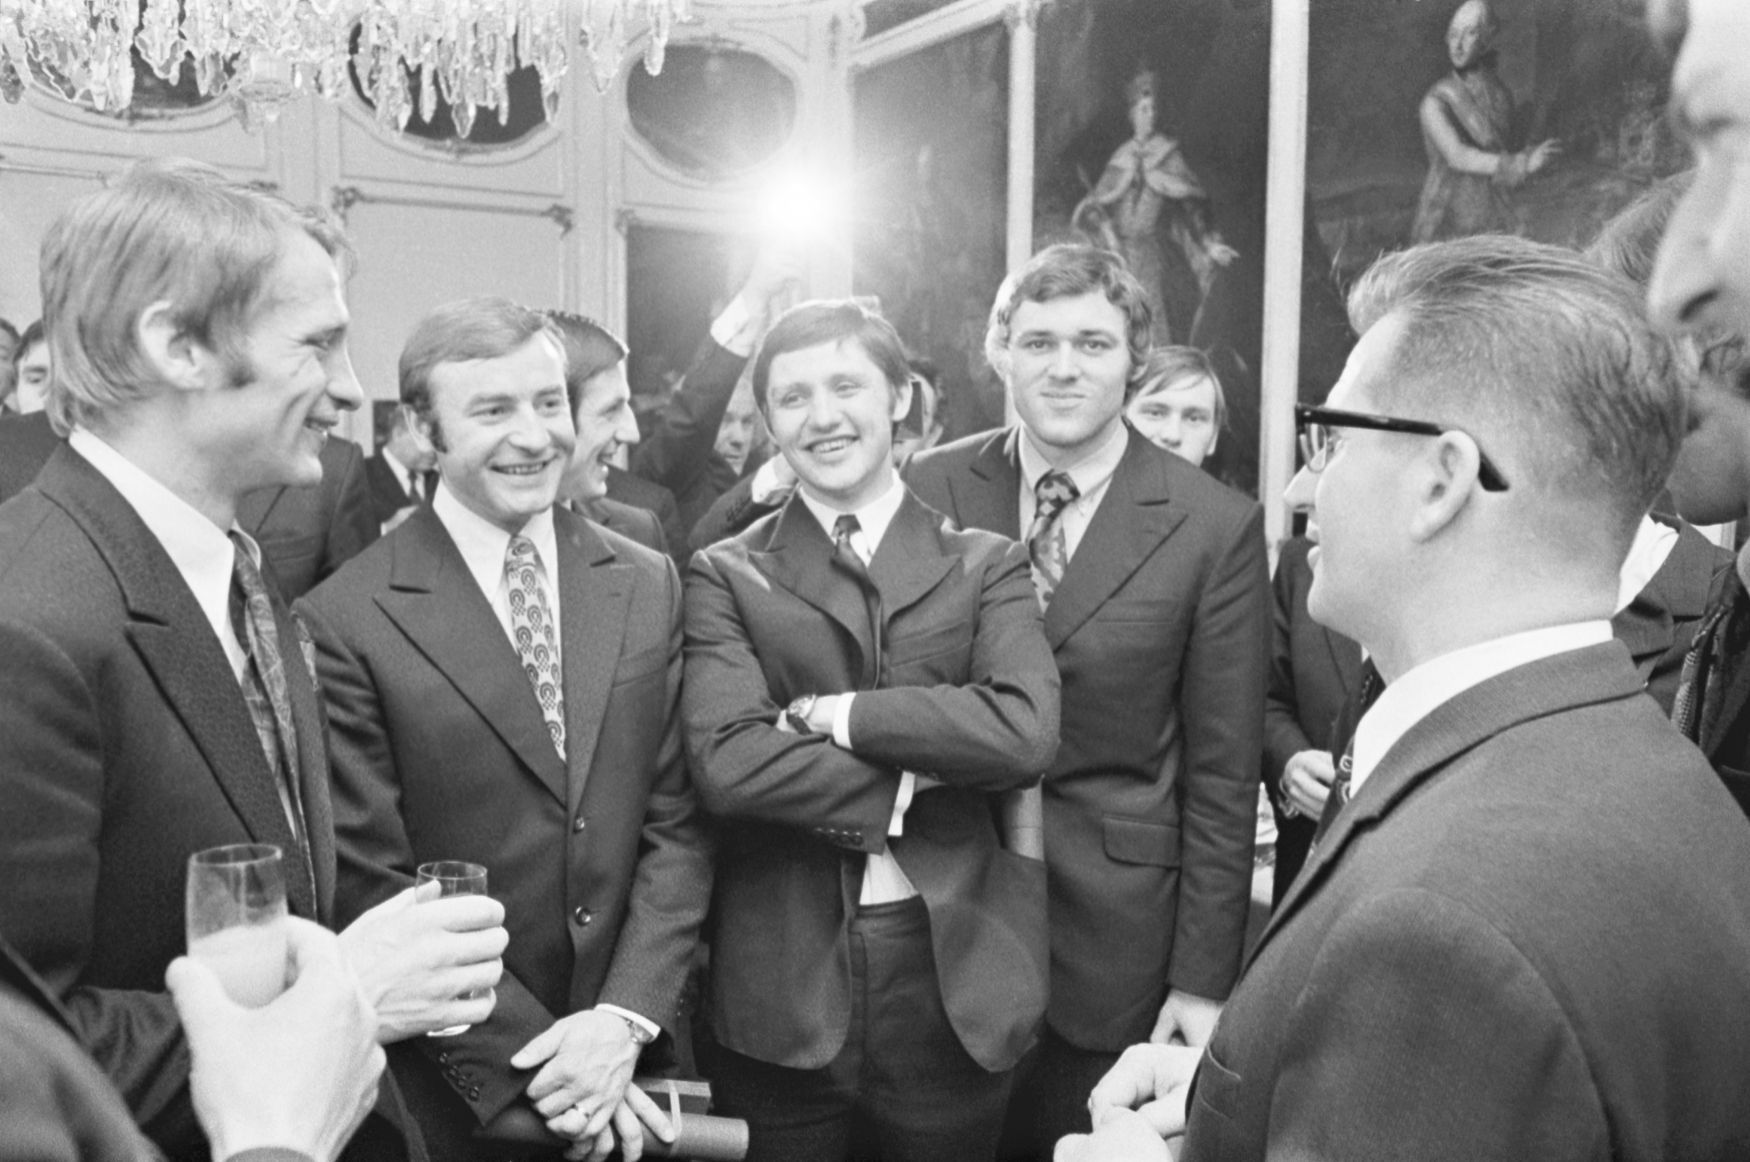 Českoslovenští hokejisté u předsedy vlády Lubomíra Štrougala (1972): zleva Jaroslav Holík, Jan Klapáč, Richard Farda, Václav Nedomanský